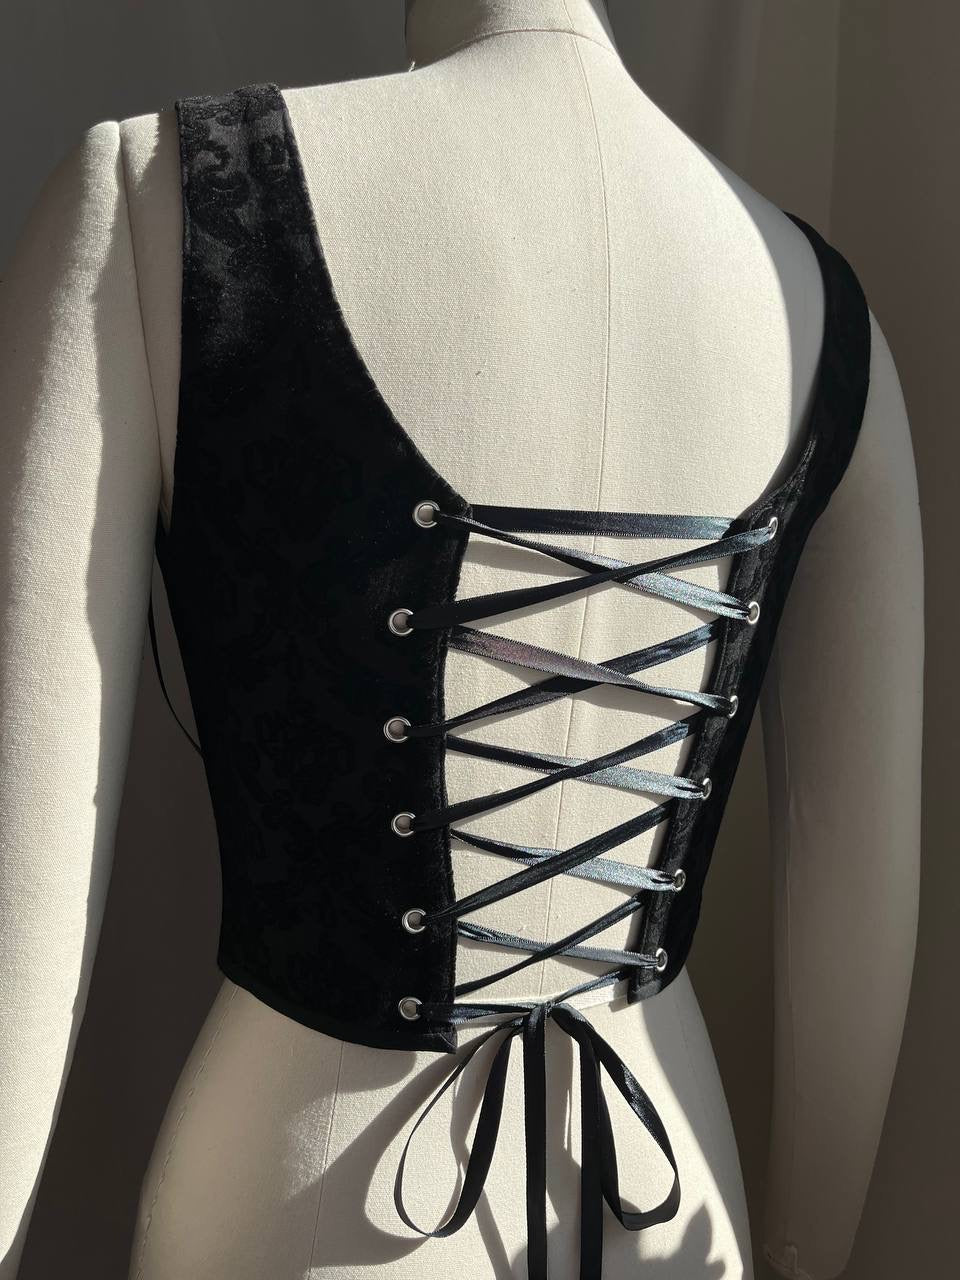 Reversible Velvet damask corset, size 4/S/44